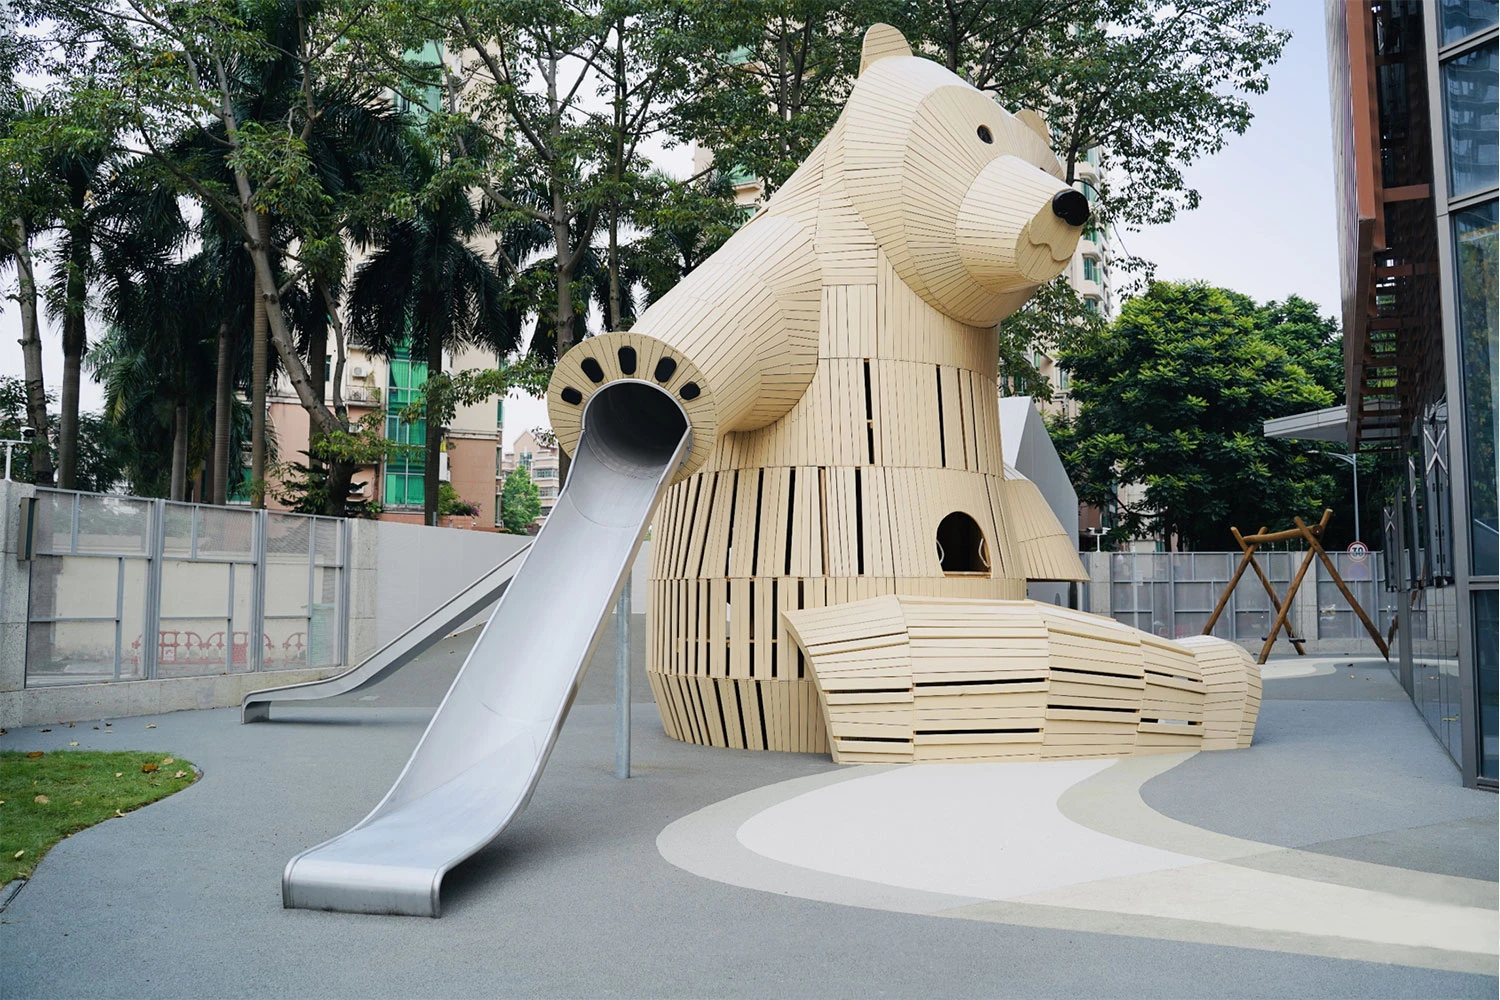 Sculpture en bois ressemblant à un gros ours dans une école maternelle en Chine